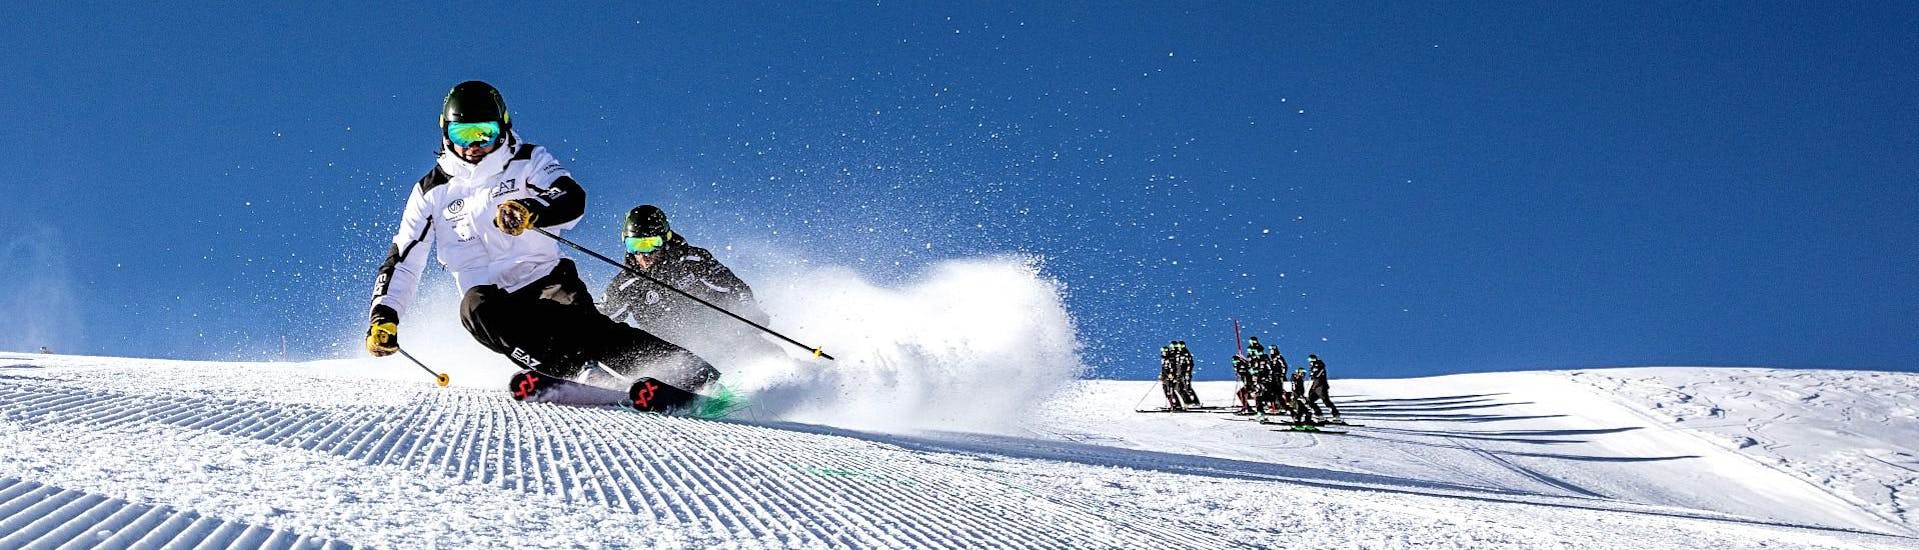 Clases de esquí para jóvenes y adultos (a partir de 15 años) para esquiadores avanzados.